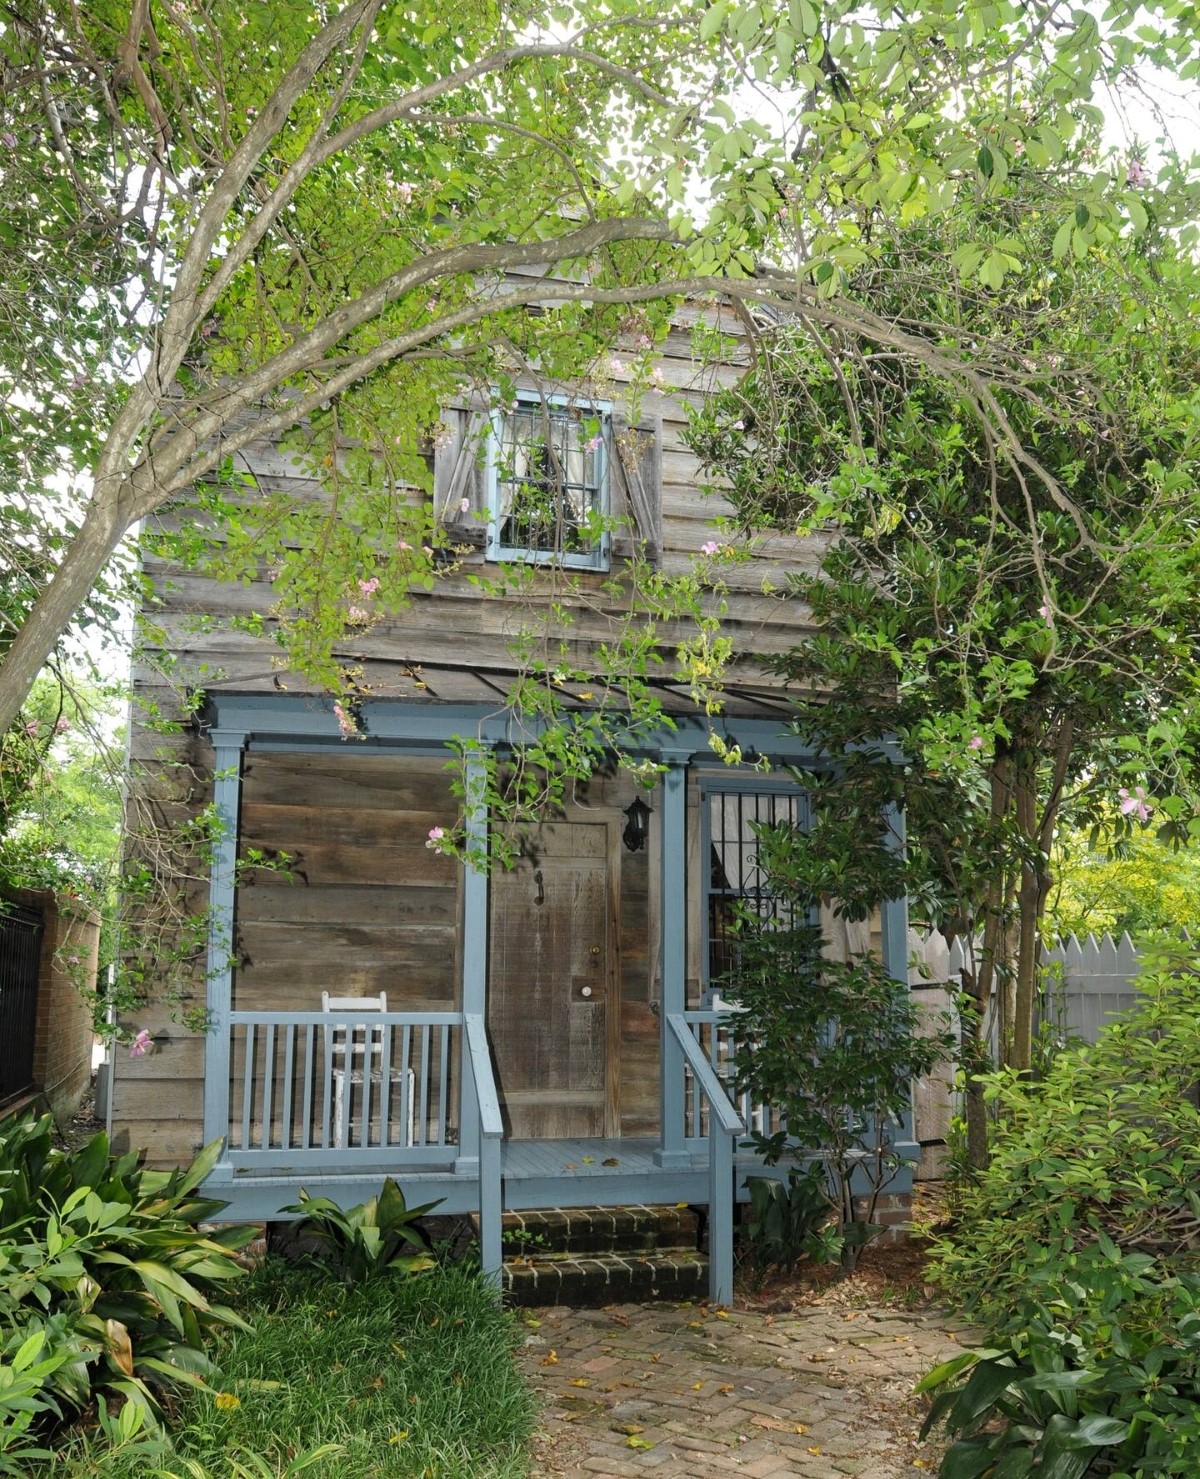 Old wooden cottage